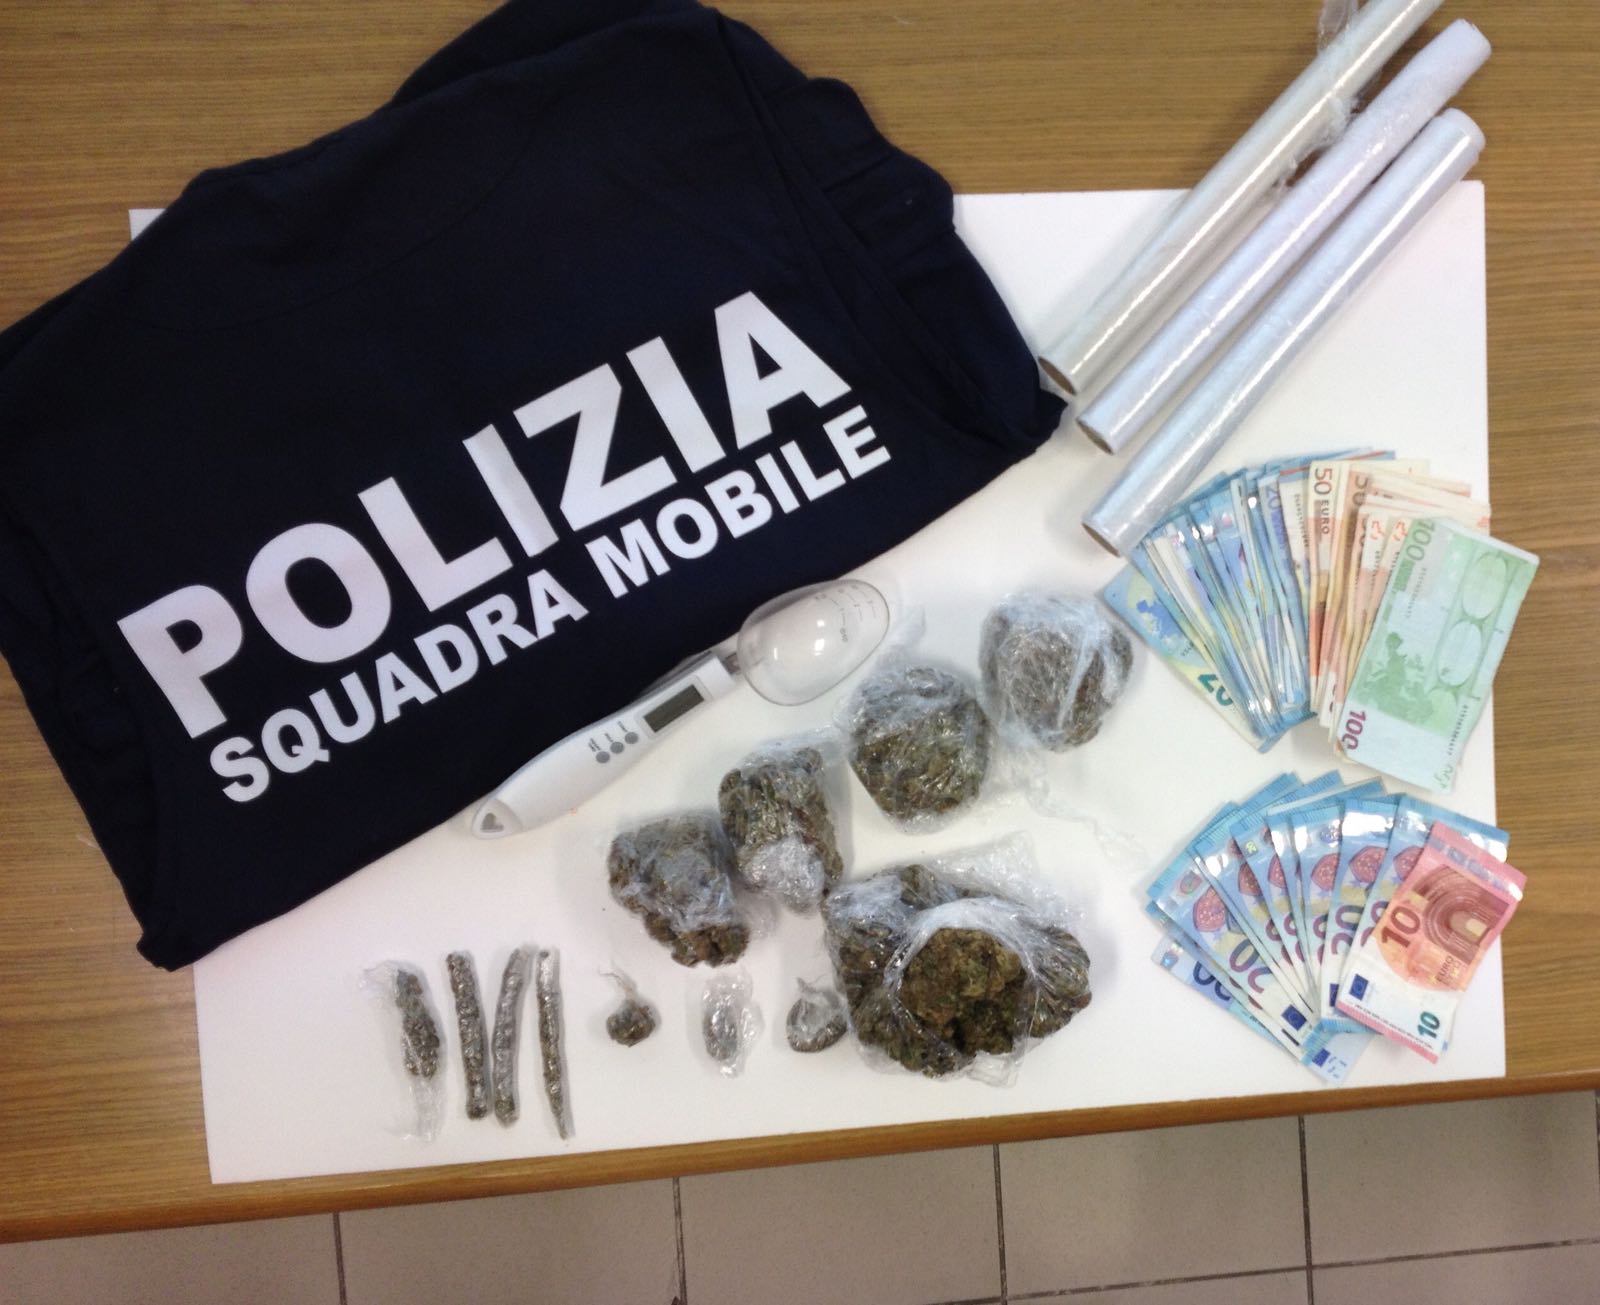  Operazione “Pusher”: 4 arresti per spaccio, sequestrati soldi e droga